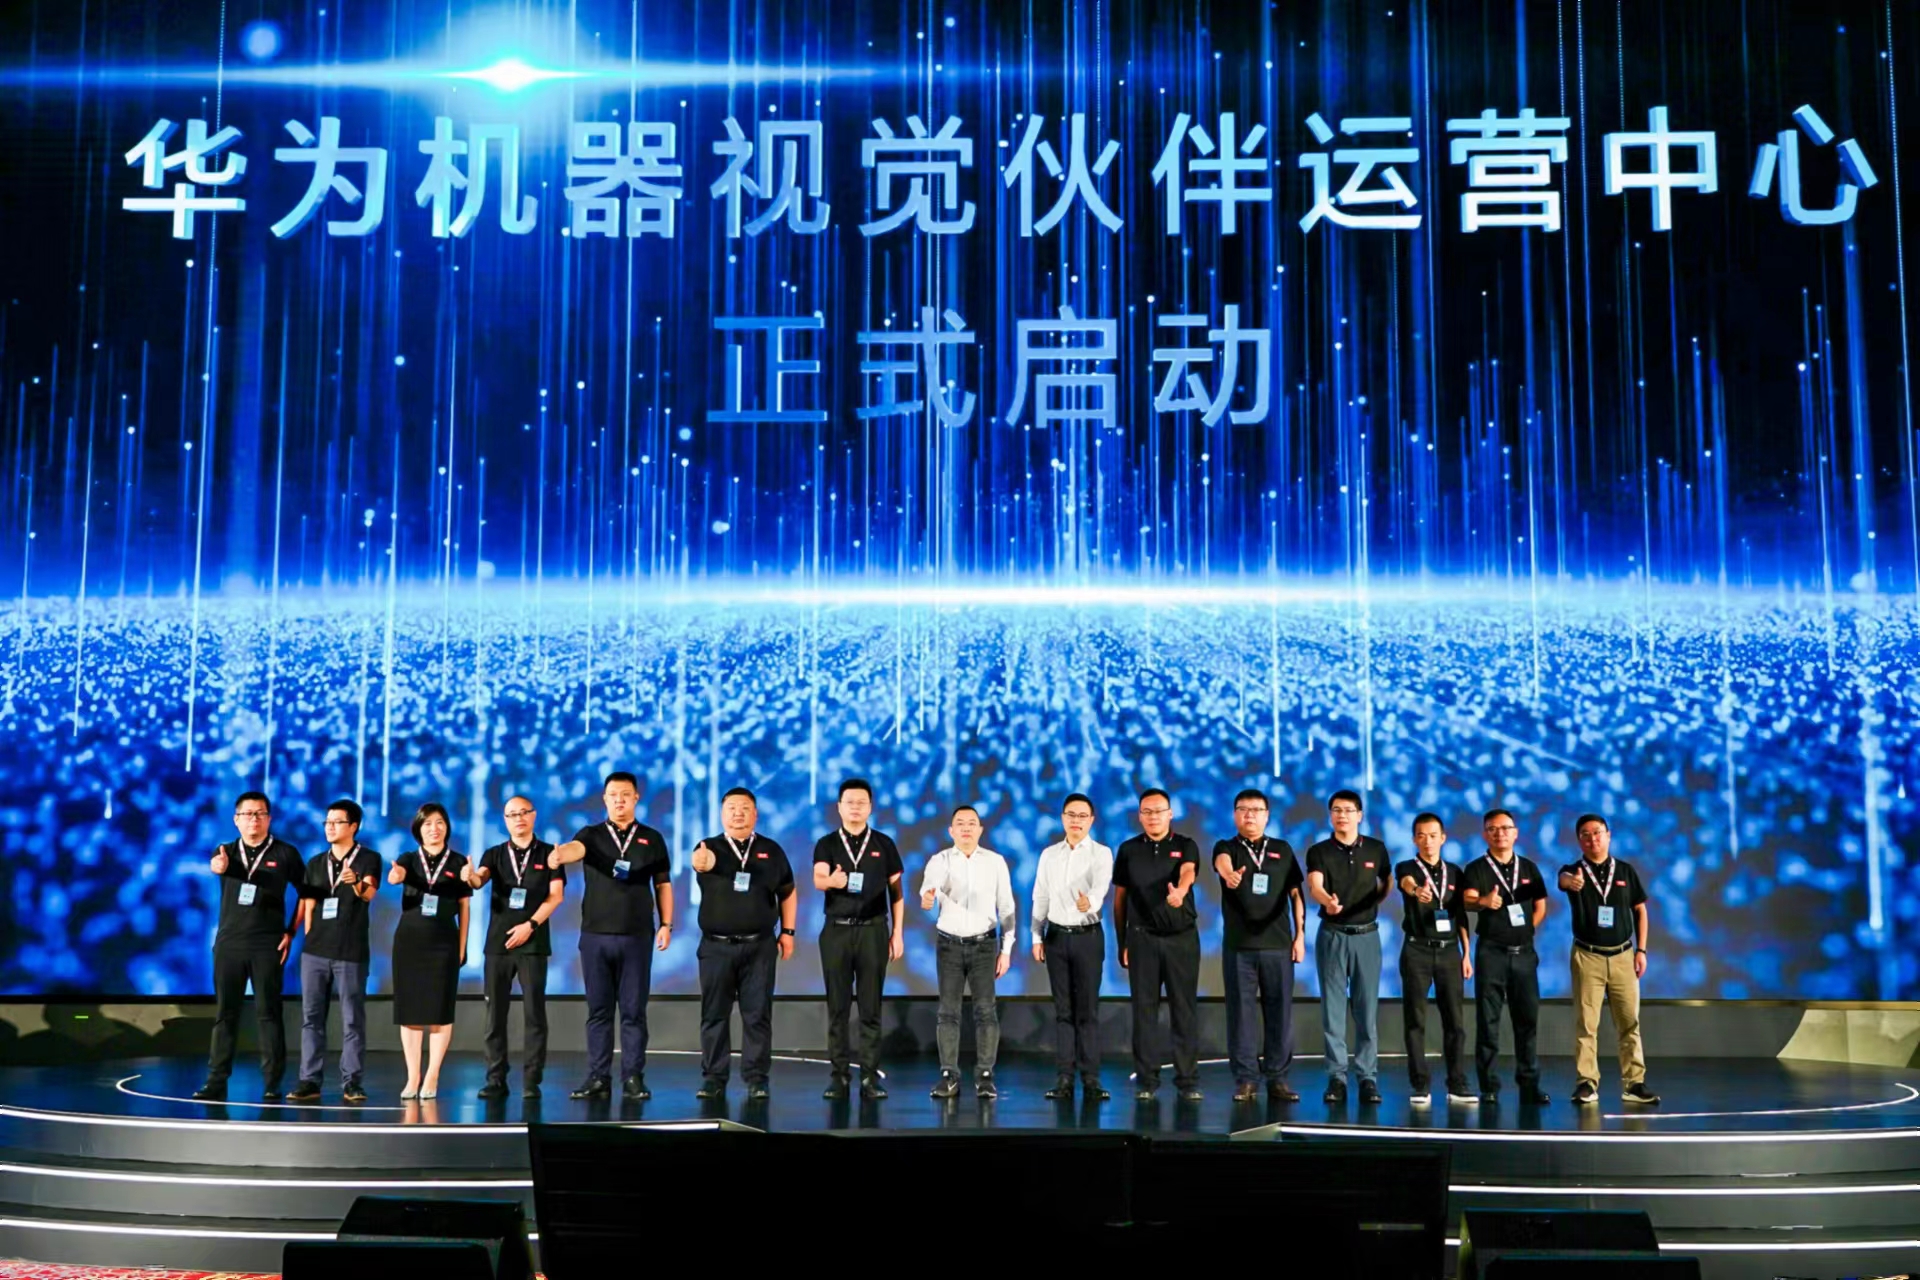 聚雅科技受邀参加华为机器视觉产业峰会暨新品发布会2022活动